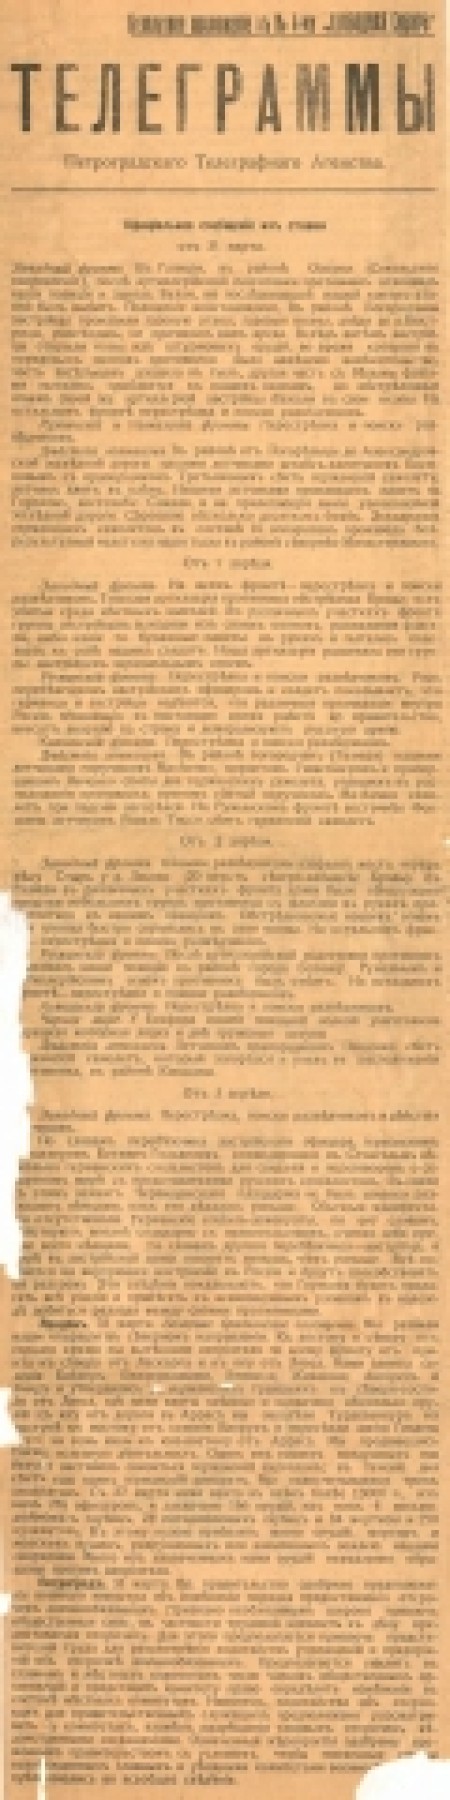 Свободная Сибирь : газета политическая, литературная и экономическая. - 1917. - Приложение к № 4 (7 апреля)